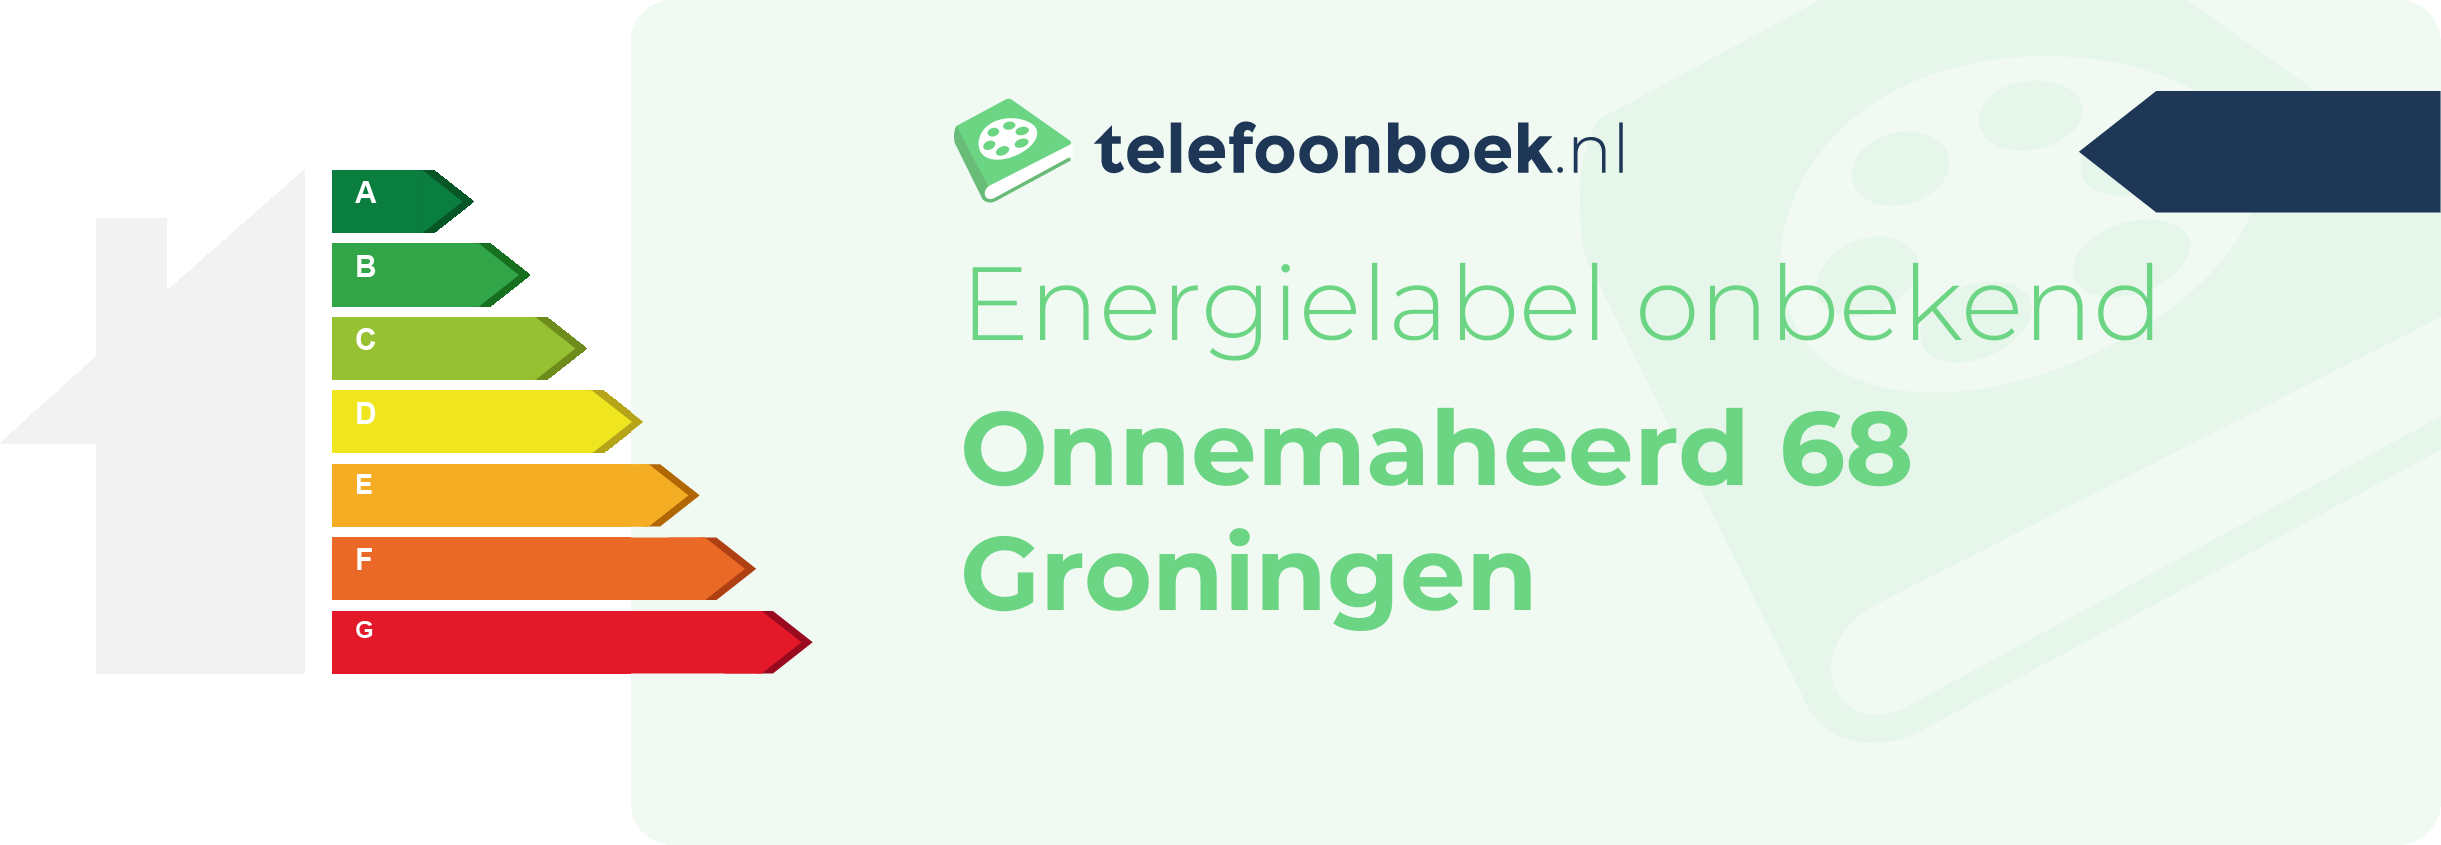 Energielabel Onnemaheerd 68 Groningen